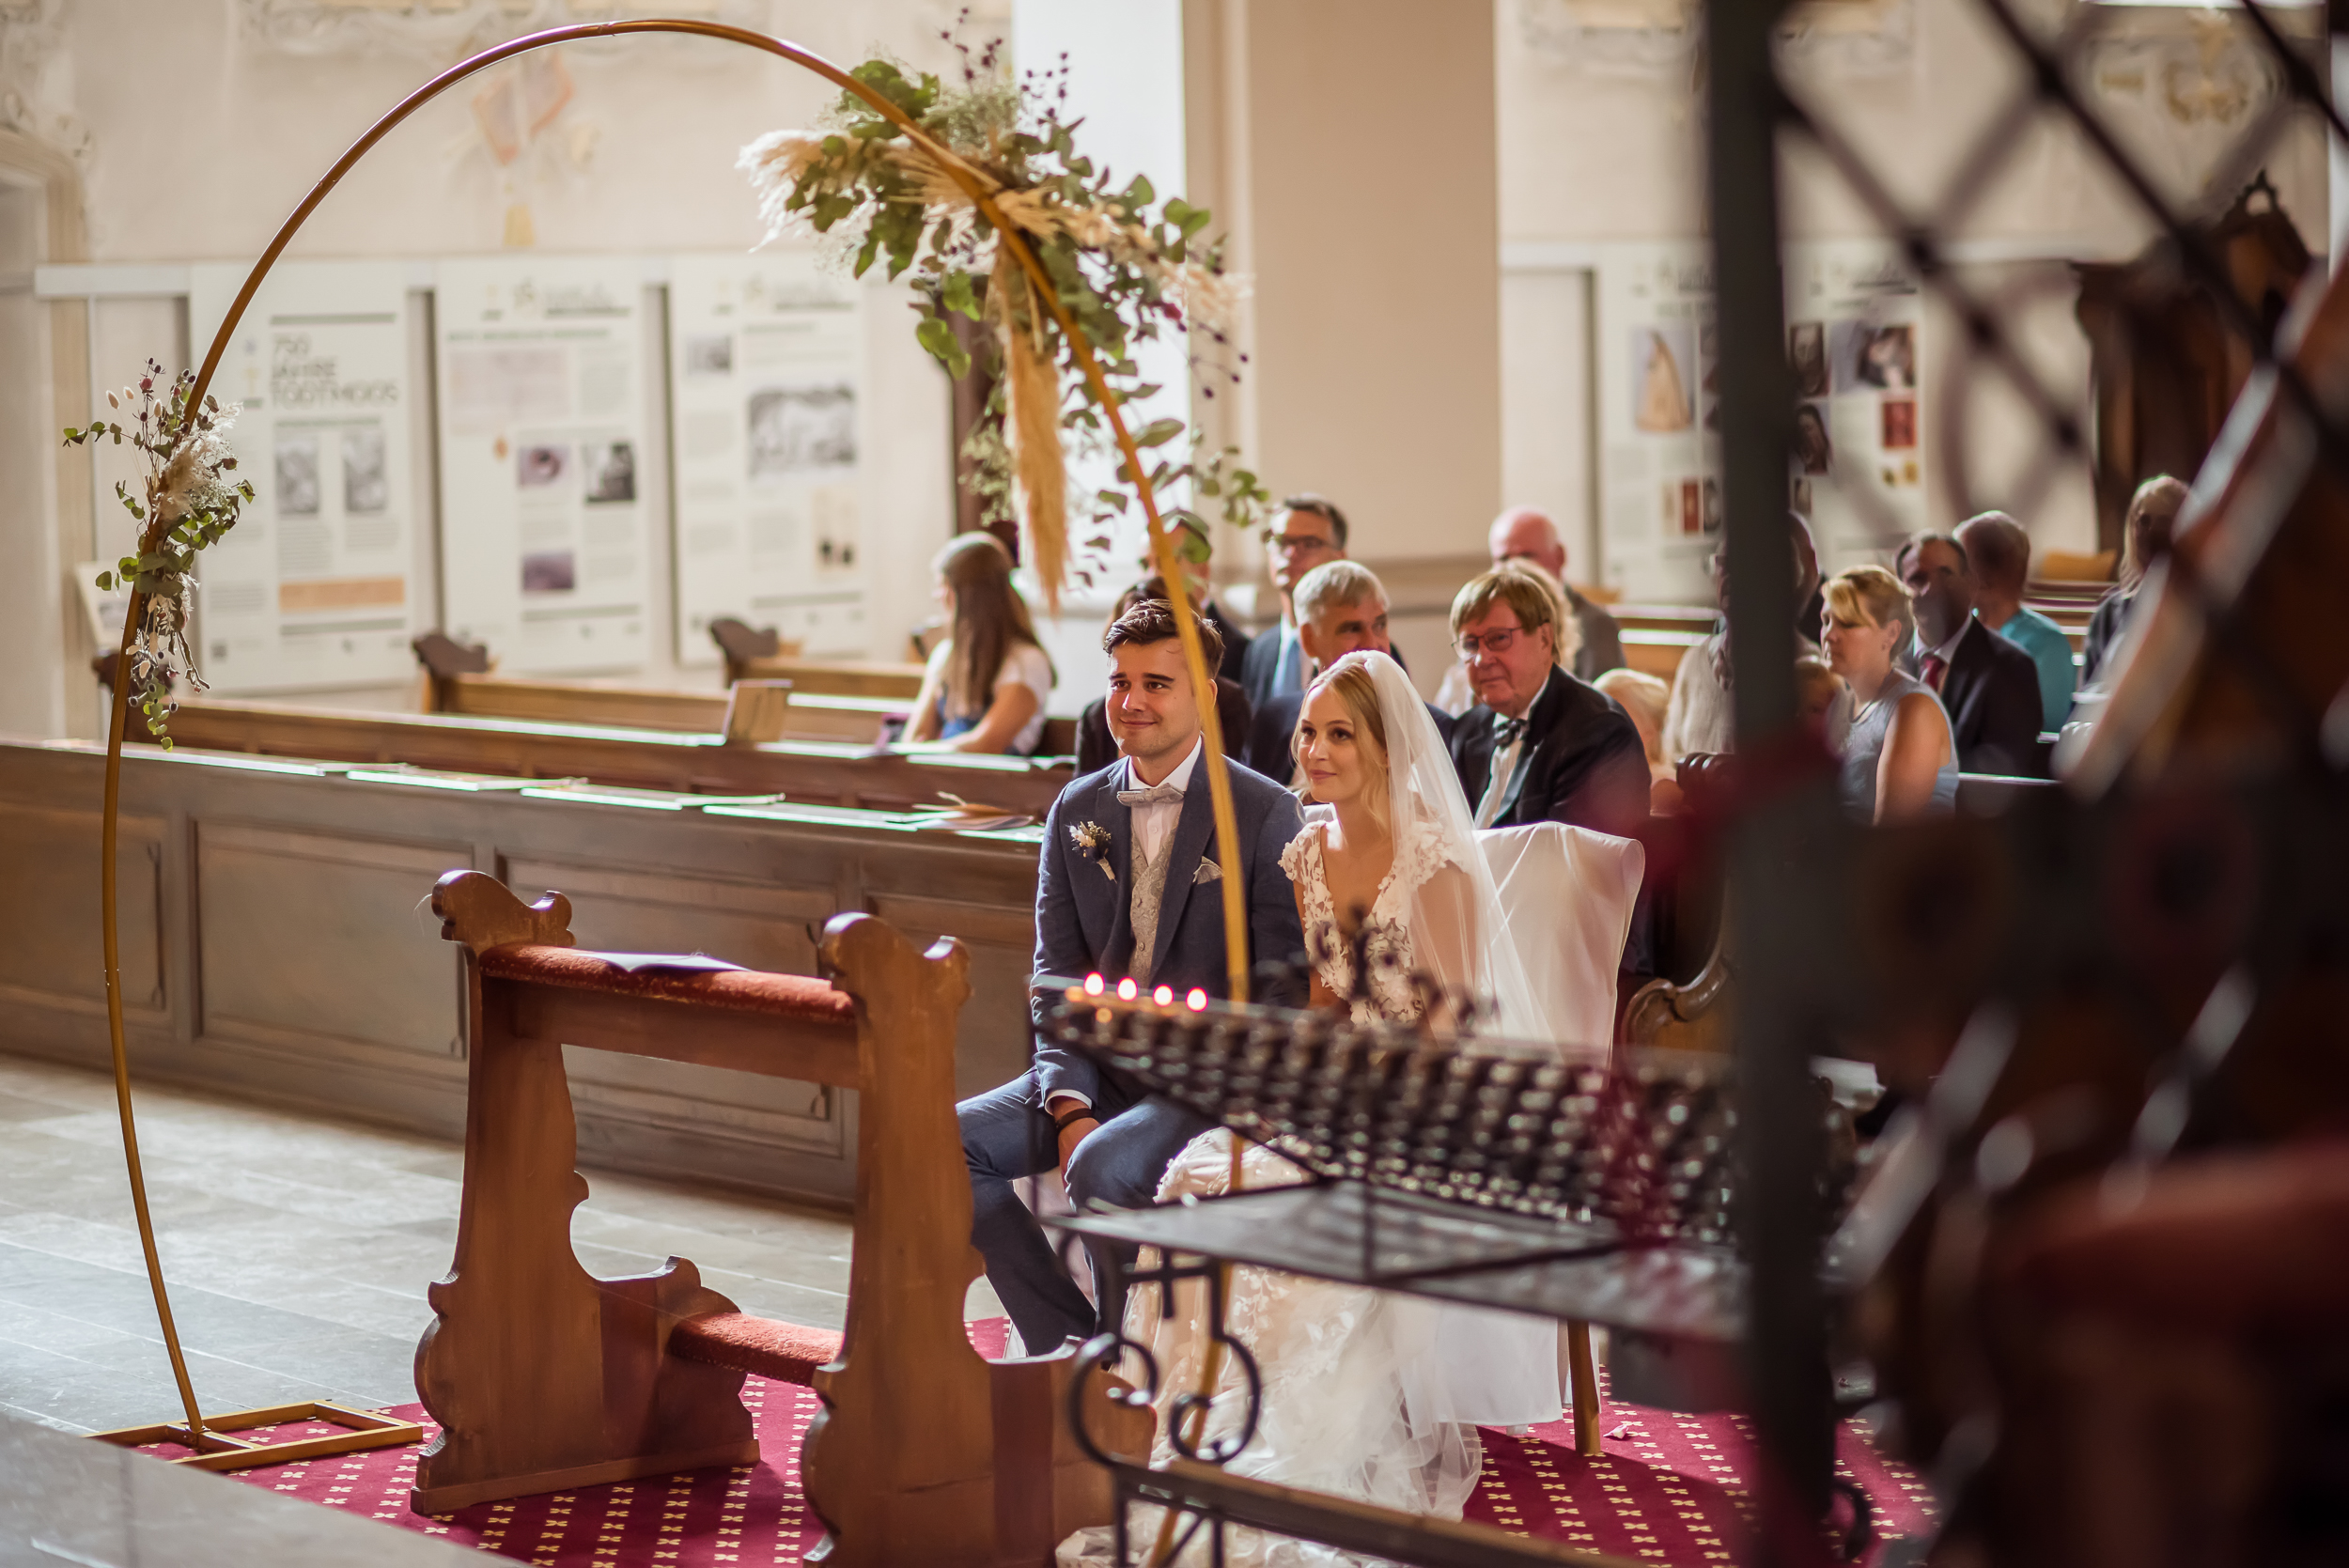 Brautpaar sitzt vor einem goldenen Hochzeitsbogen im Altar einer katholischen Kirche, die Braut trägt einen weißen Schleier.